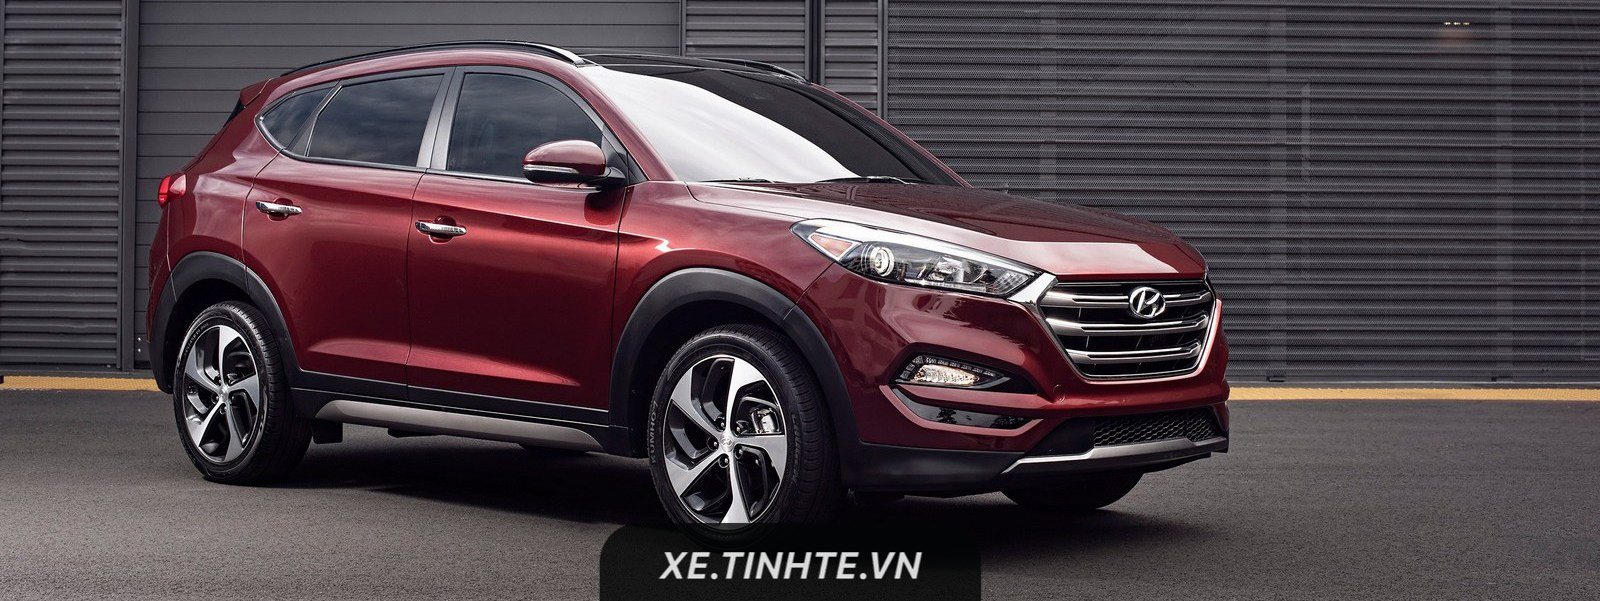 Hyundai Tucson có bản nâng cấp nhẹ 2018, bổ sung thêm tính năng, giá từ 22.550 USD